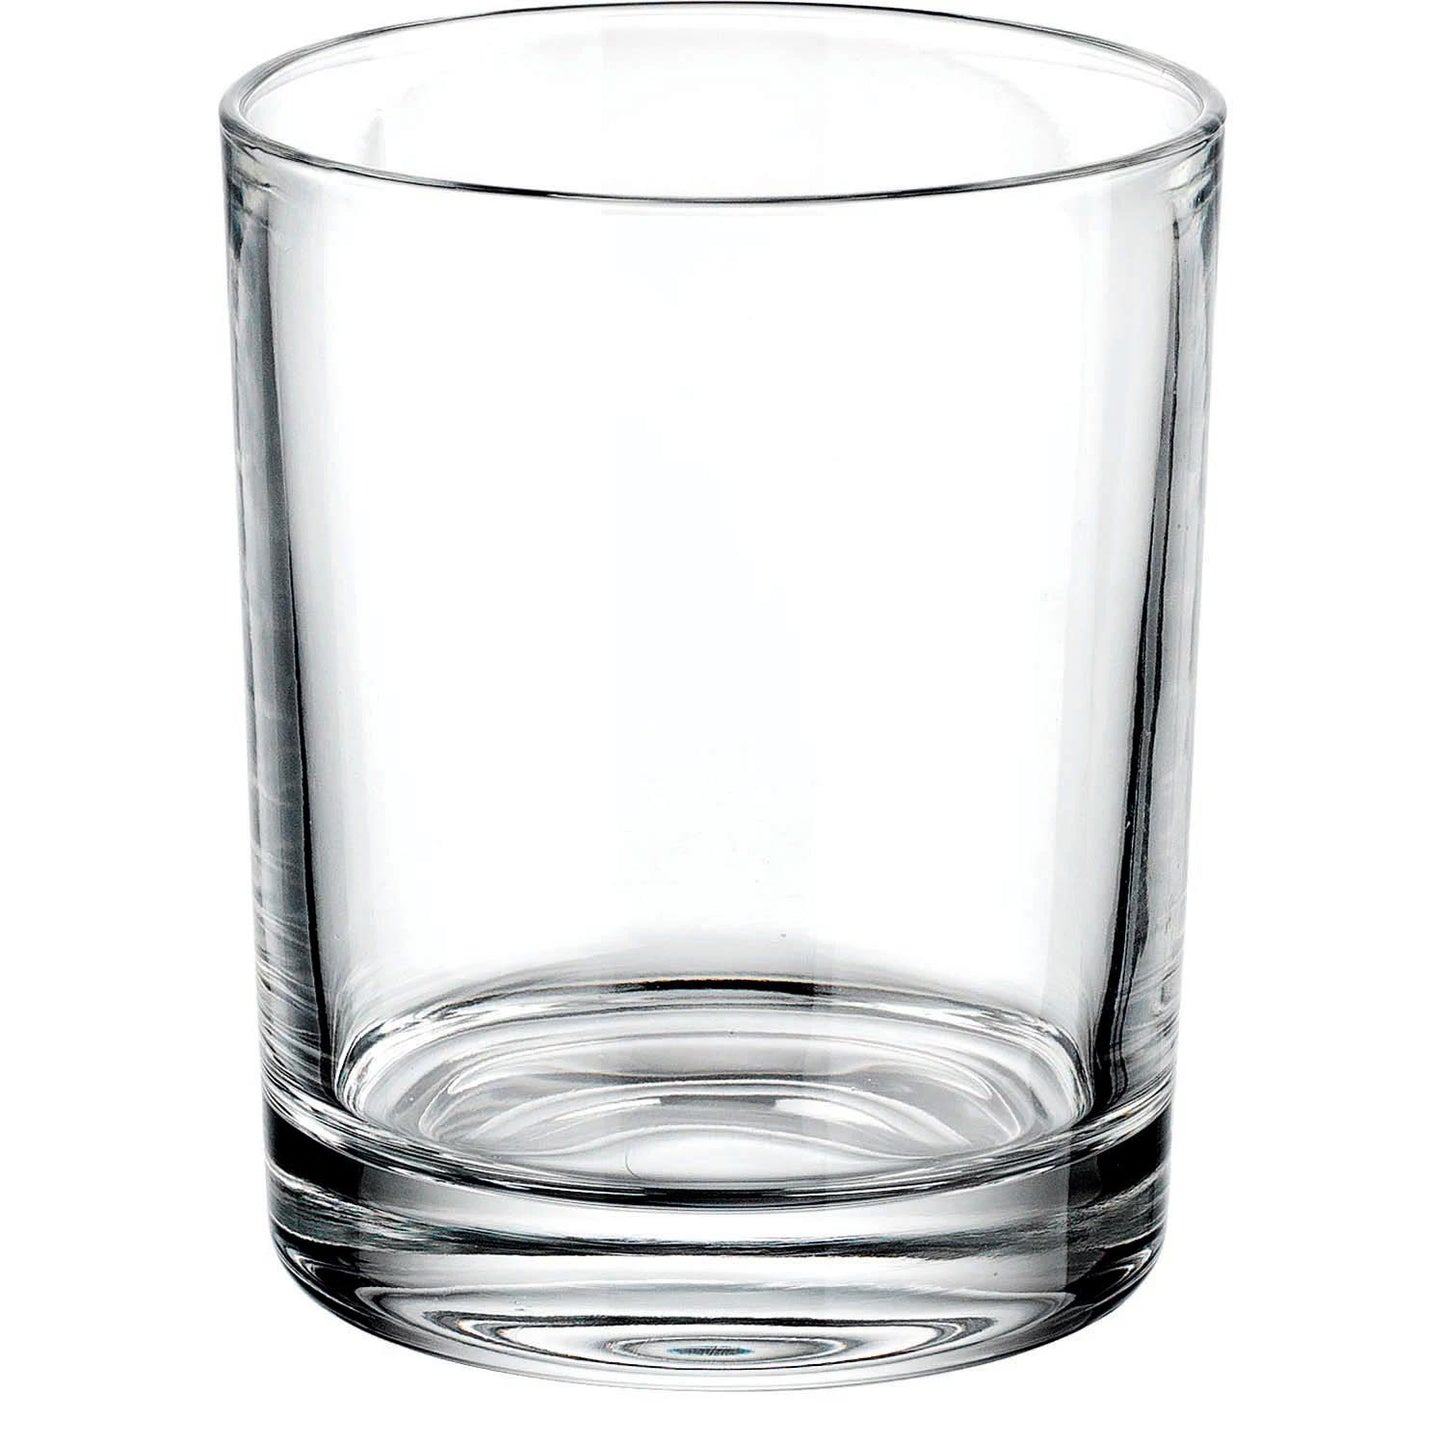 Godinger Whiskey Barware Set - 4 Old Fashion Tumbler Glasses with 2 Chilled Whisky Ice Ball Molds Boundary